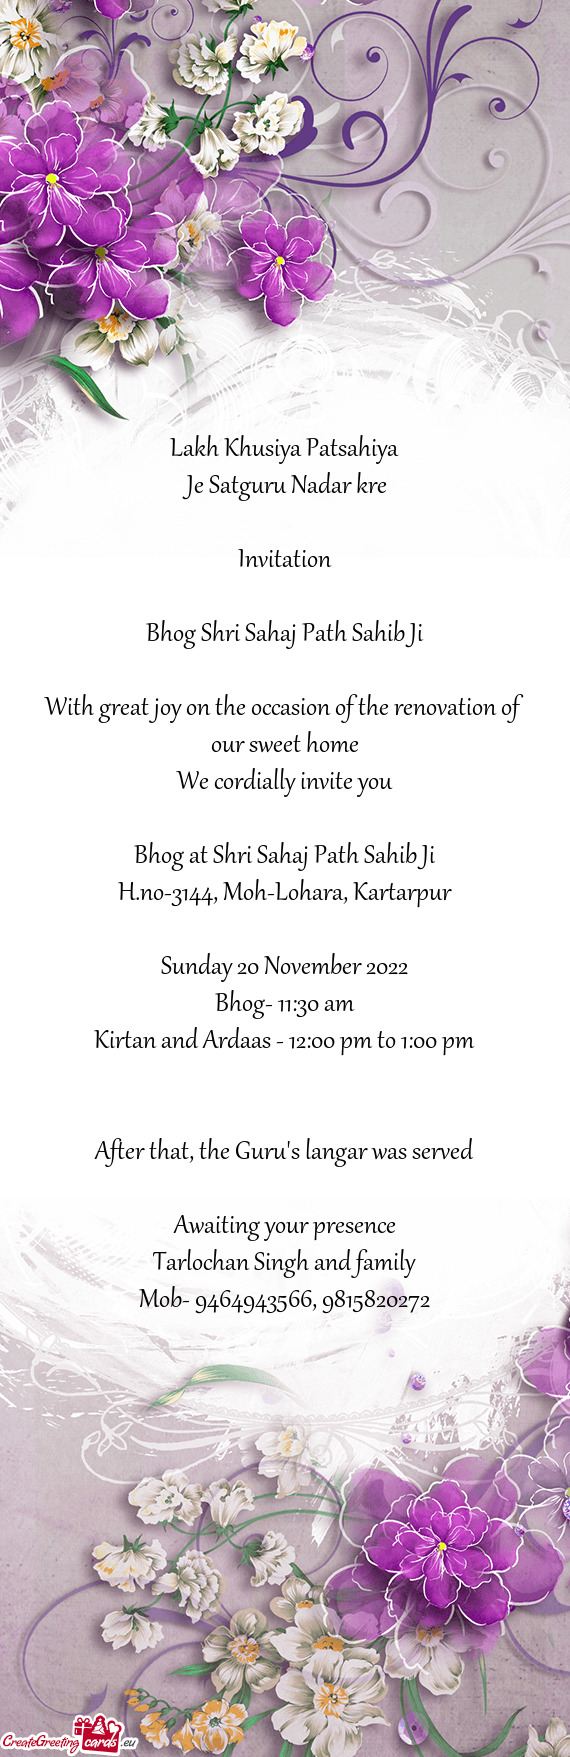 Bhog Shri Sahaj Path Sahib Ji